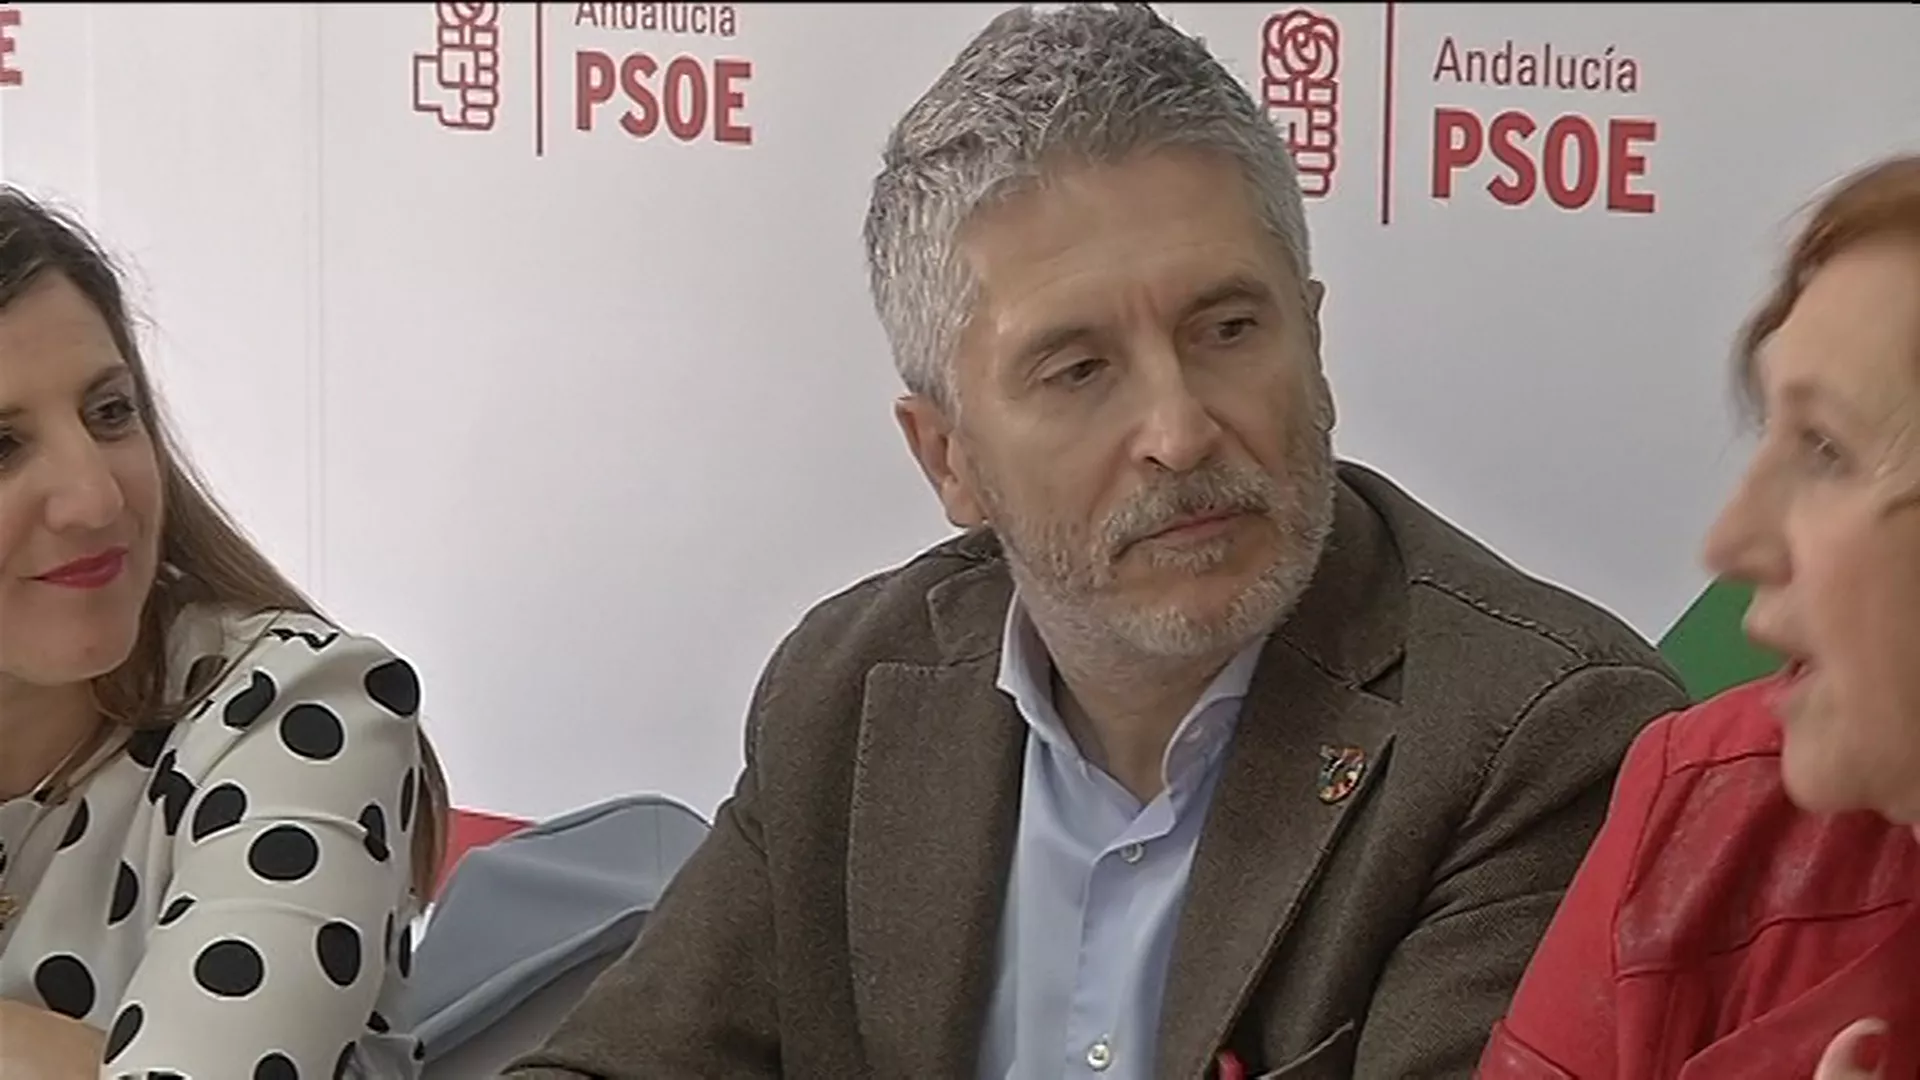 Grande-Marlaska en el PSOE provincial en la anterior campaña a las generales 